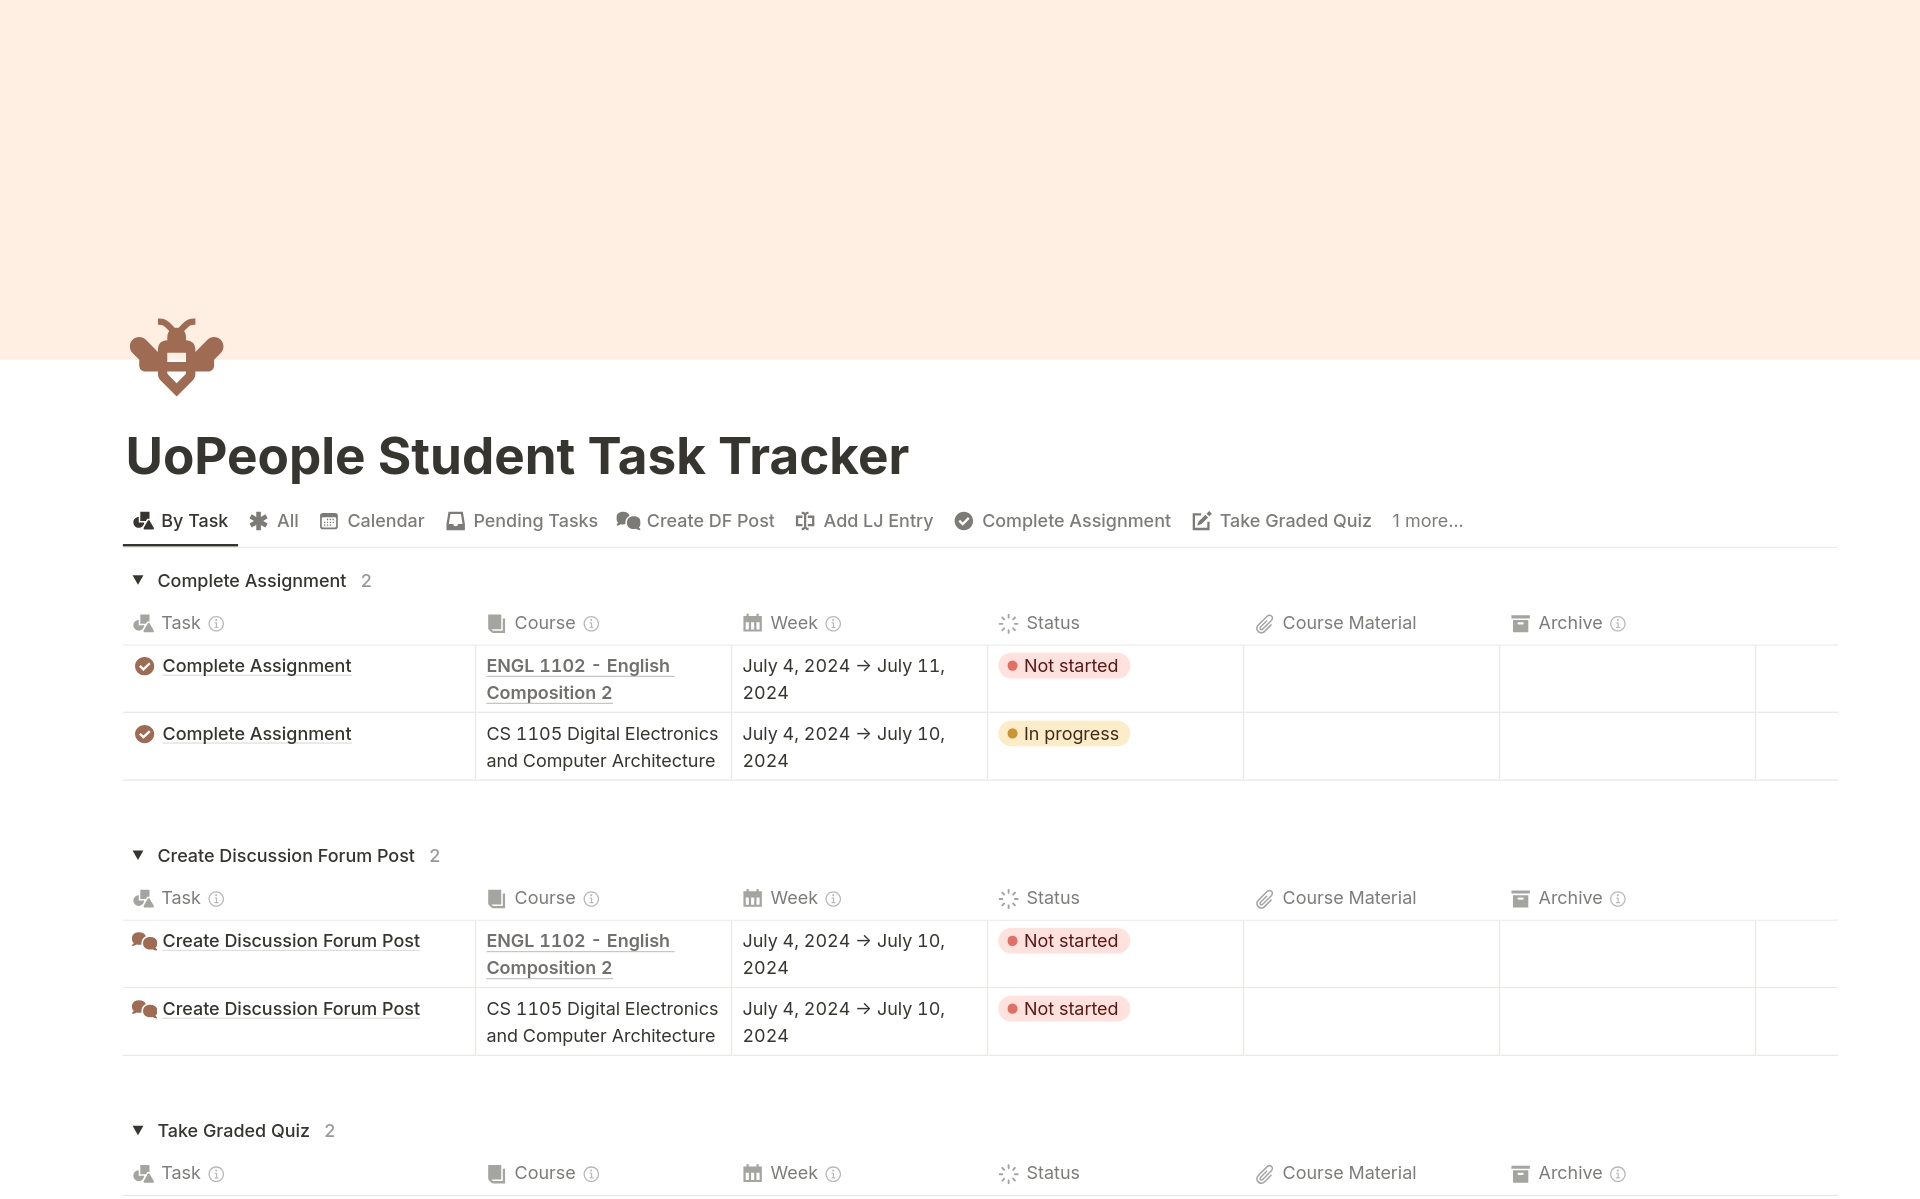 Uma prévia do modelo para UoPeople Student Task Tracker